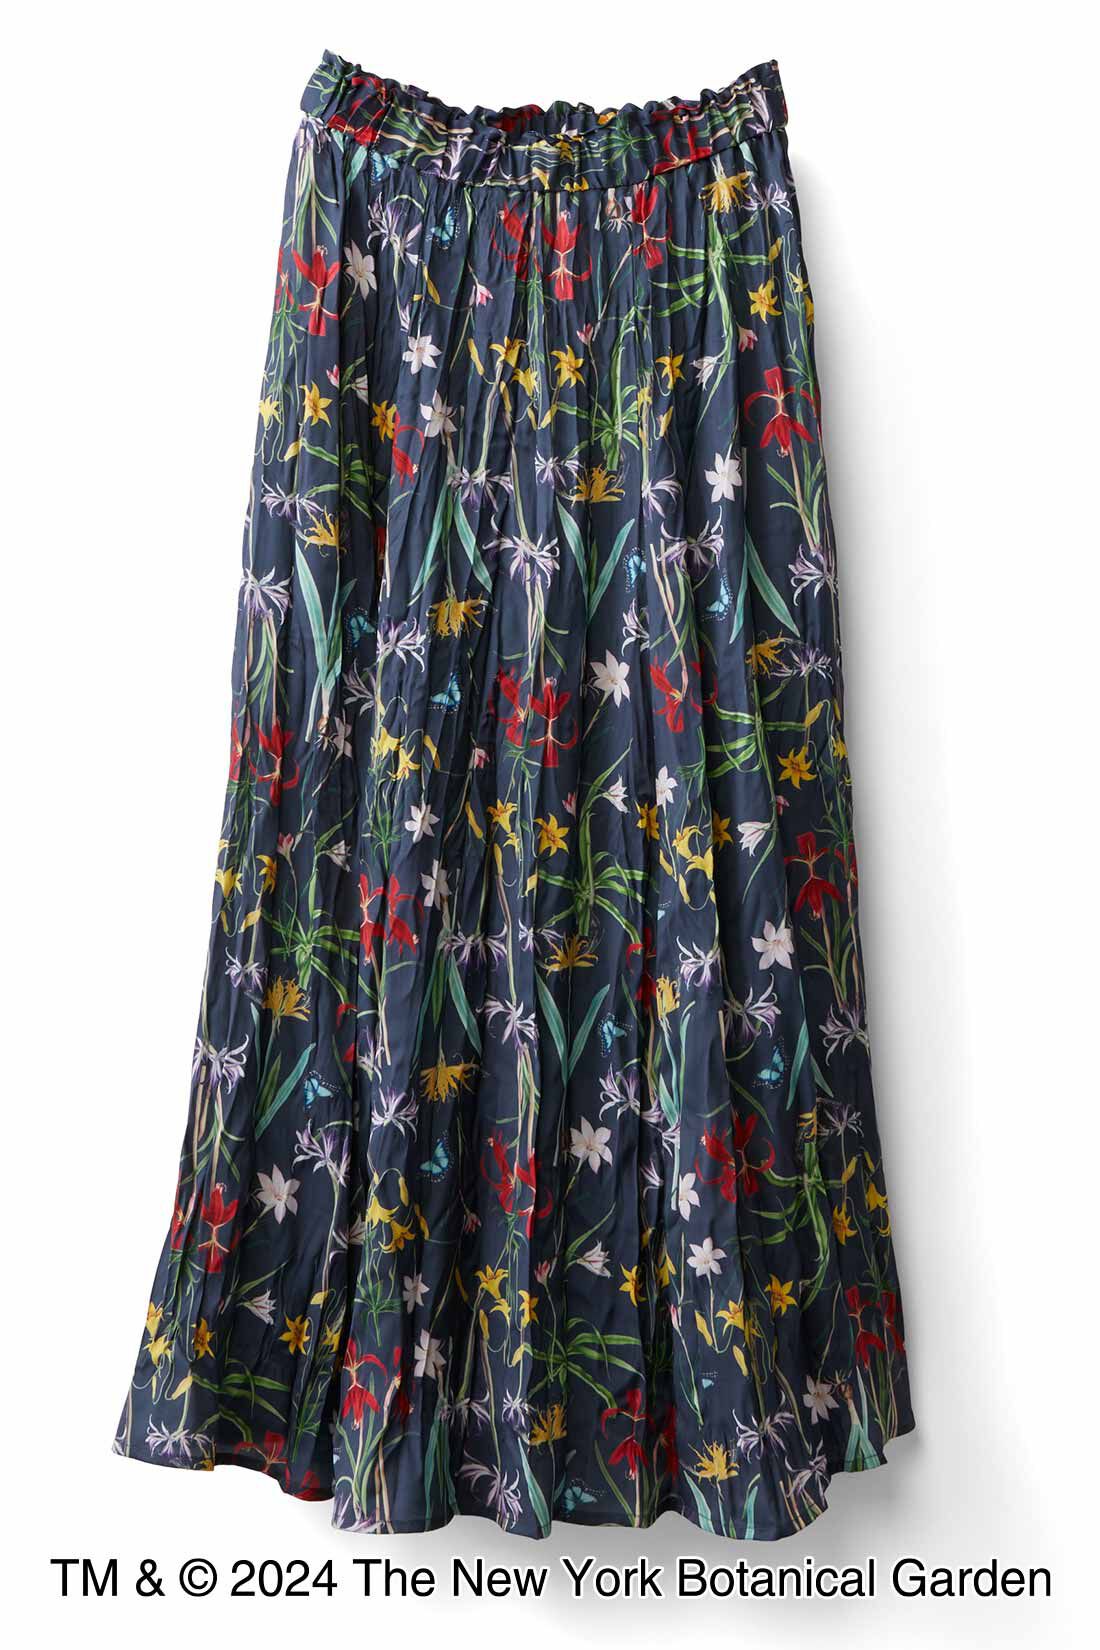 IEDIT|ニューヨーク植物園×IEDIT[イディット]　リンクル加工をほどこしたボタニカル柄スカート〈ダークネイビー〉|ウエストは総ゴムで、おなかまわりがらく。便利なポケット付き。